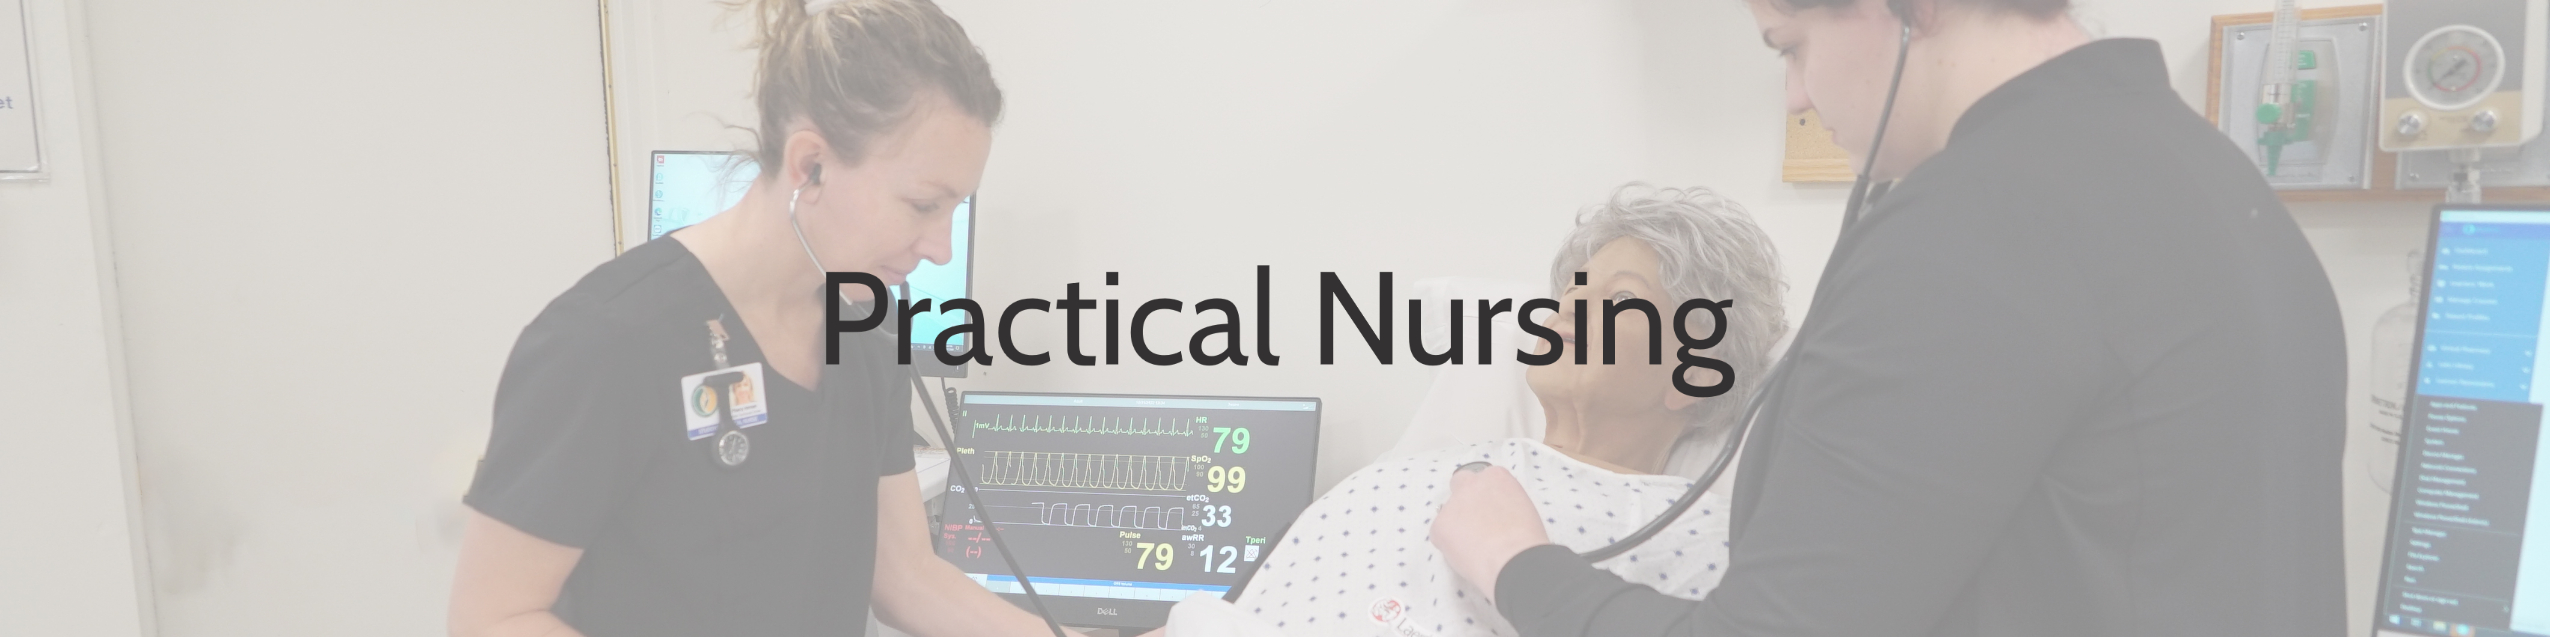 Practical Nursing 